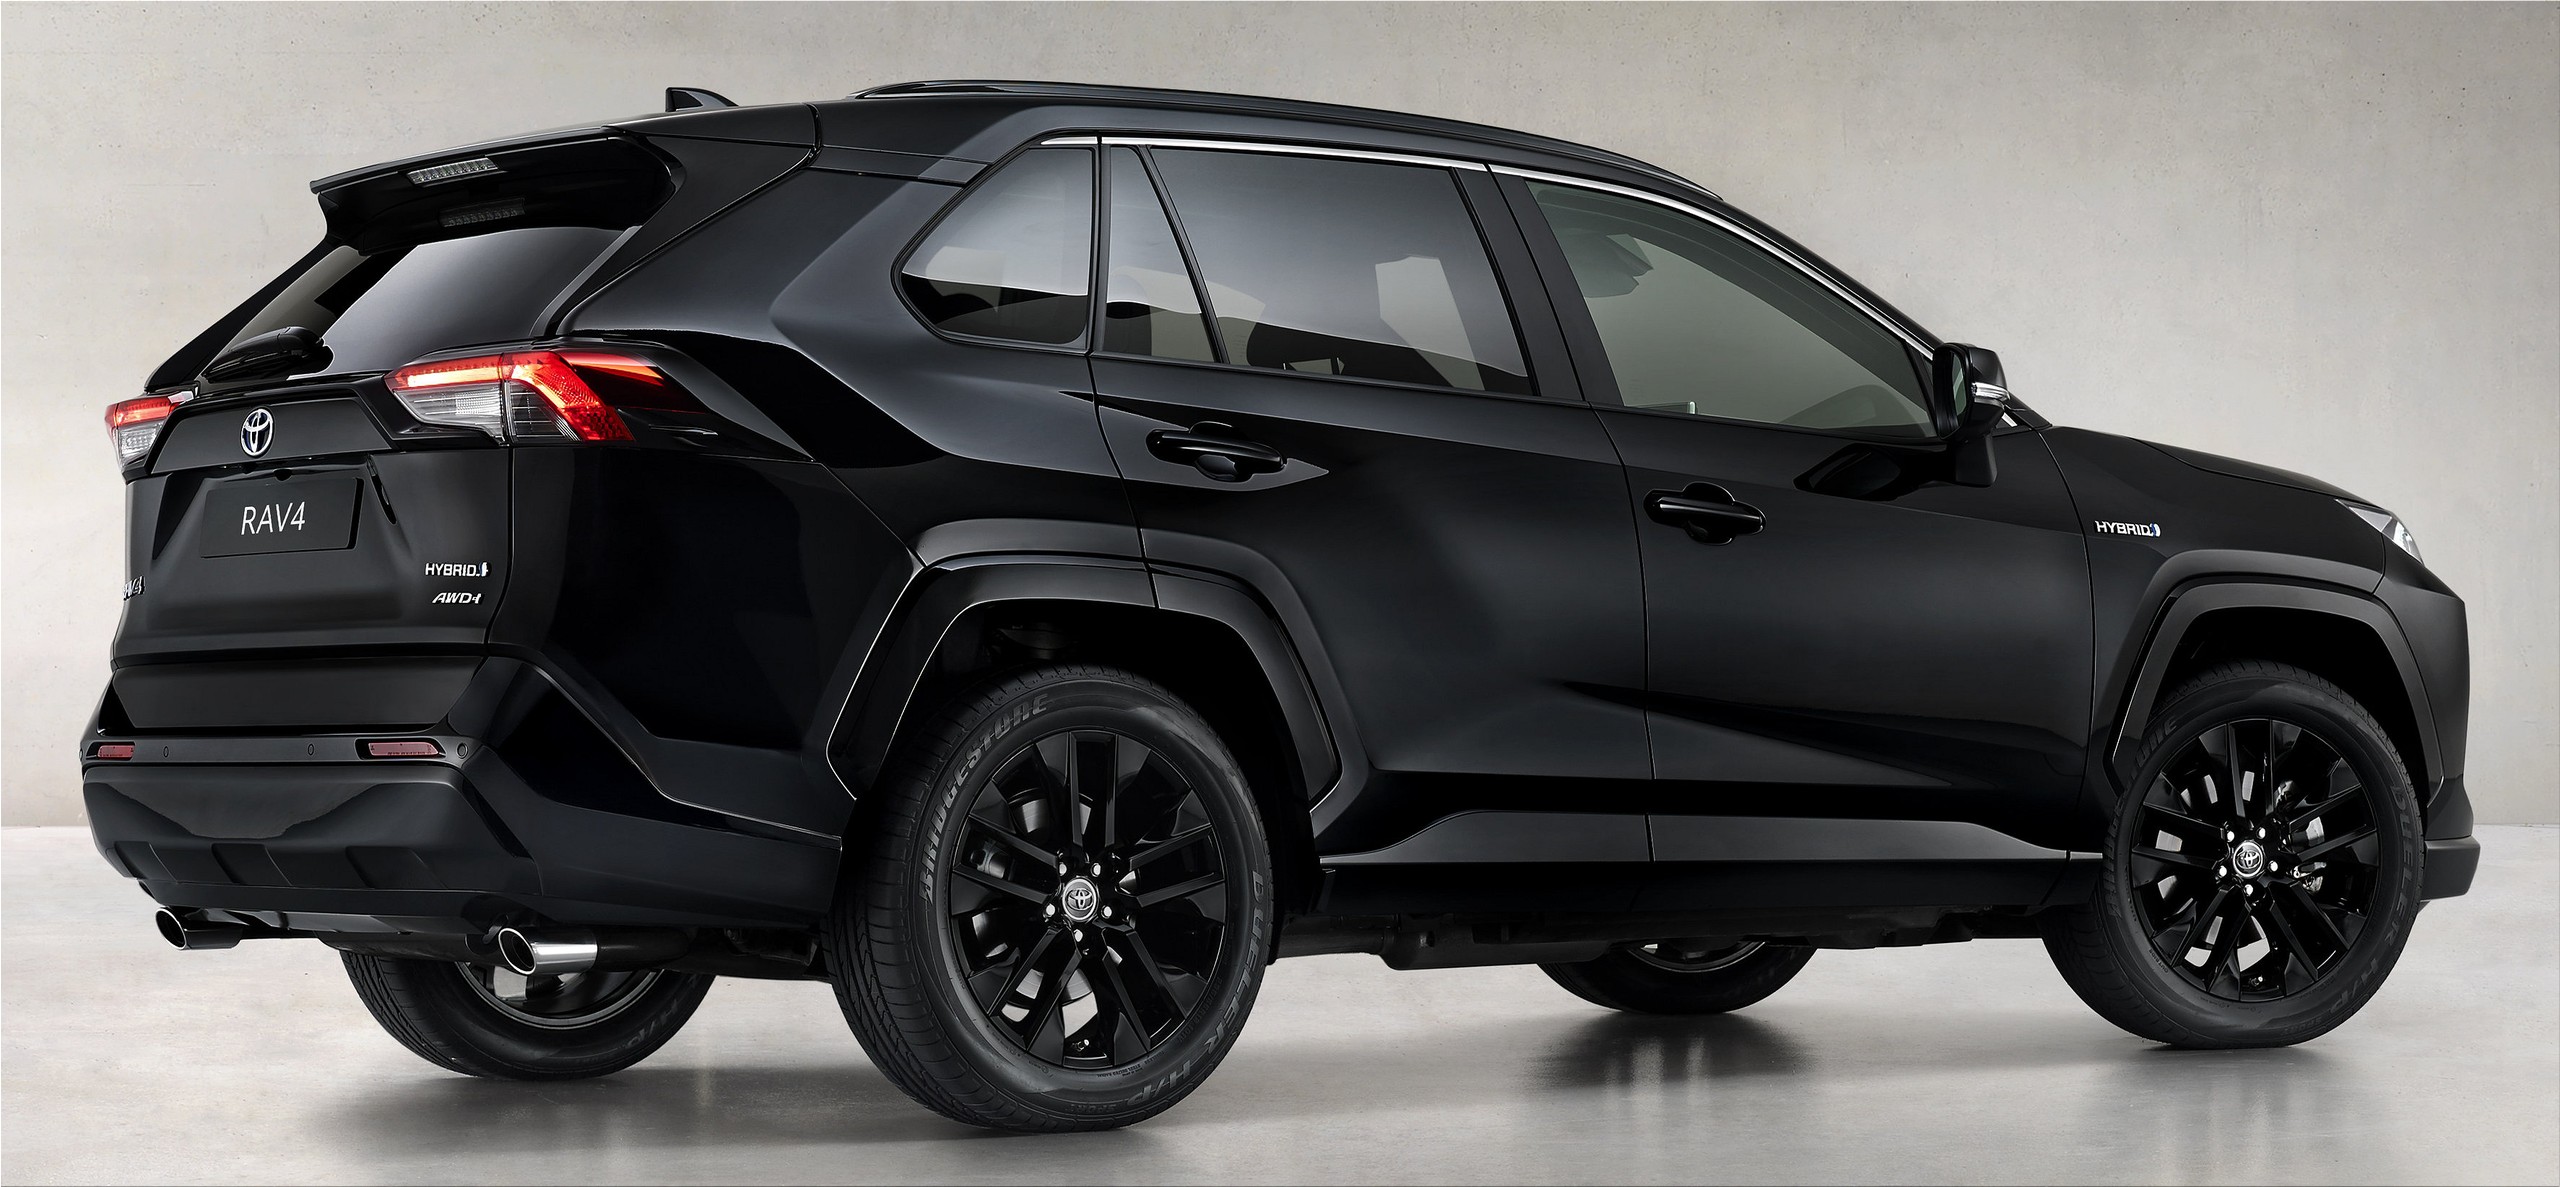 Toyota RAV4 Hybrid Black Edition 2020 2021 Car 03 